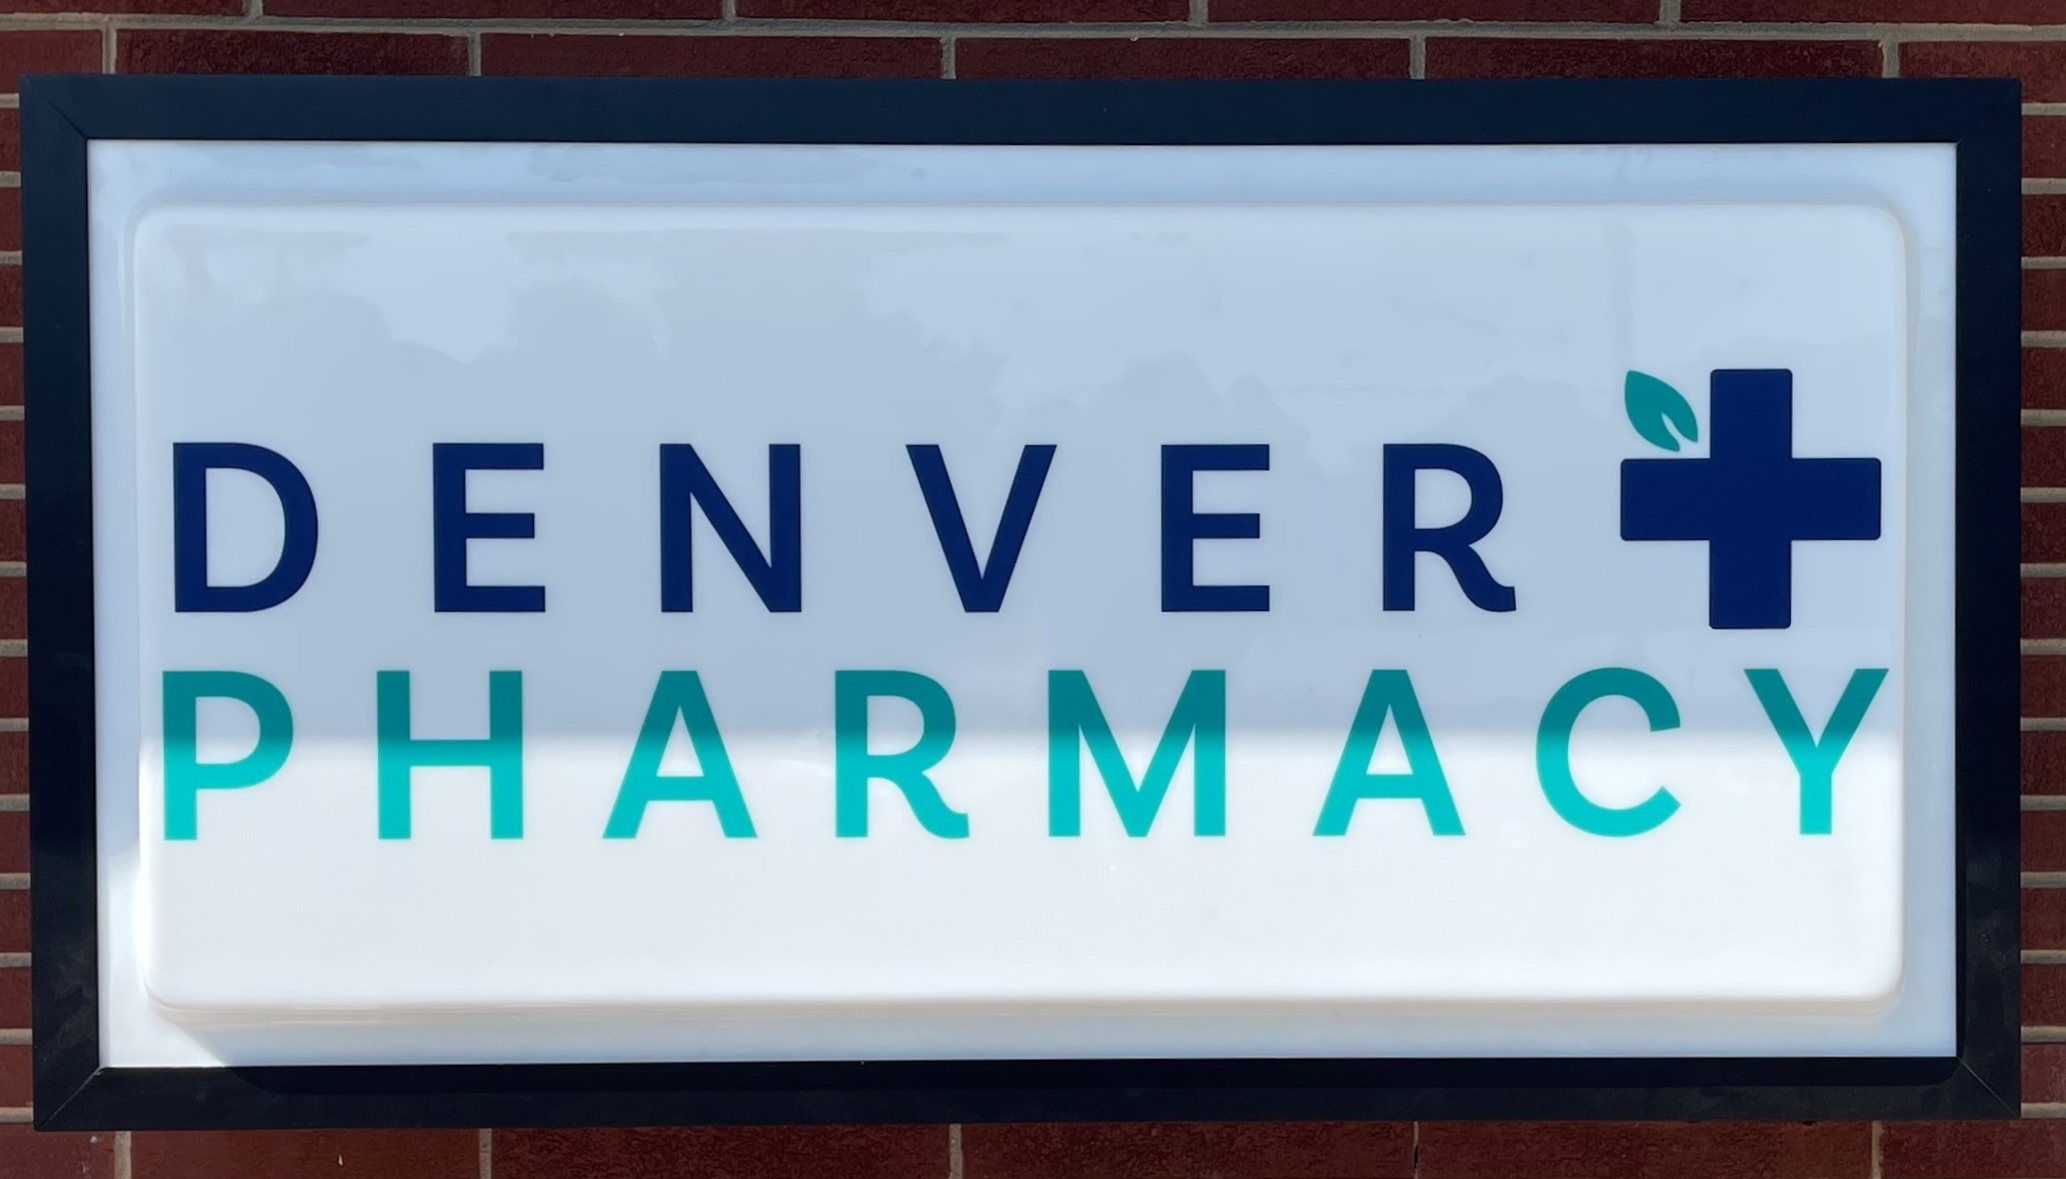 LED Cabinet Sign for Denver Pharmacy - JC Signs 2022